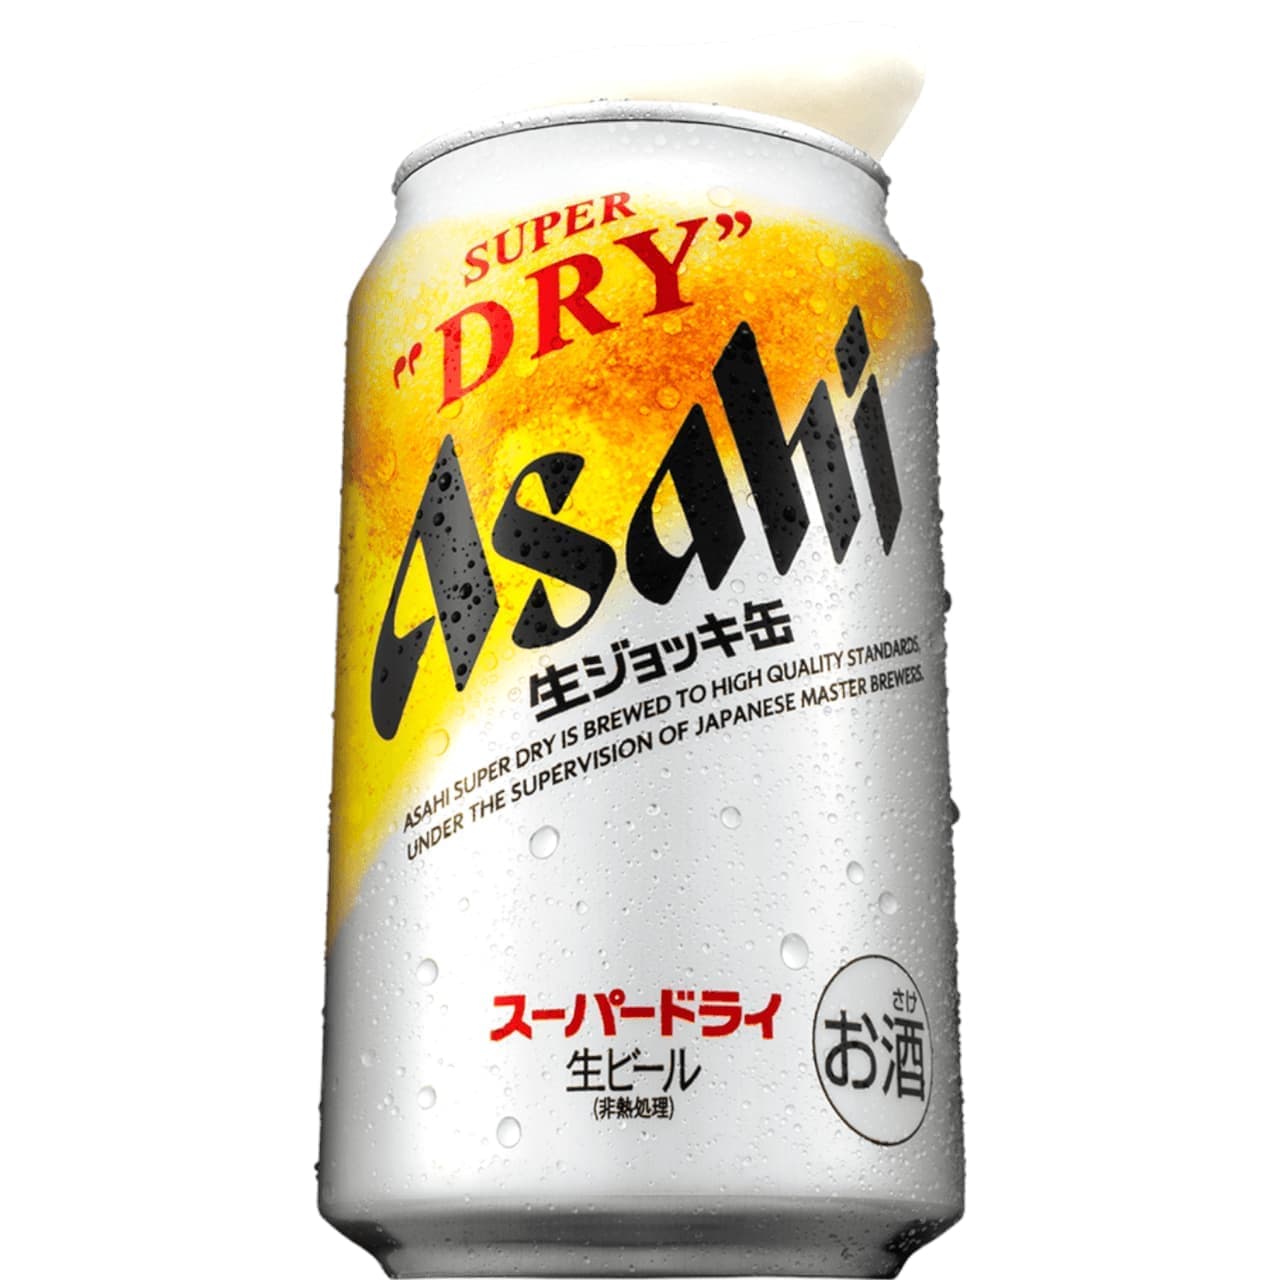 アサヒビール「アサヒスーパードライ 生ジョッキ缶」